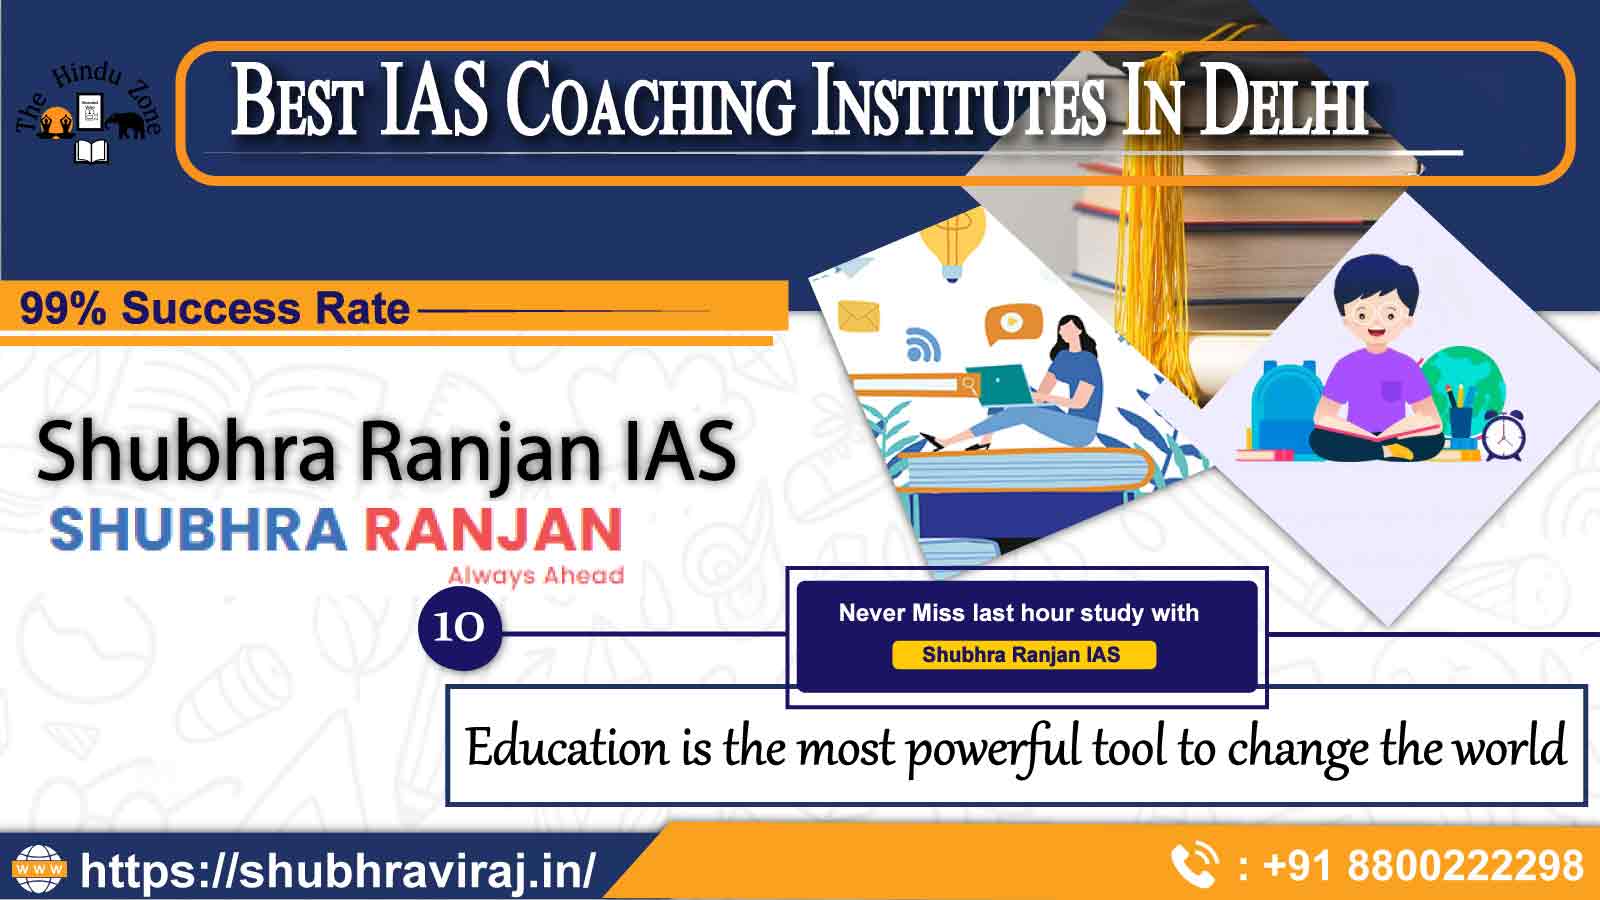 Best IAS Coaching Institutes In Delhi